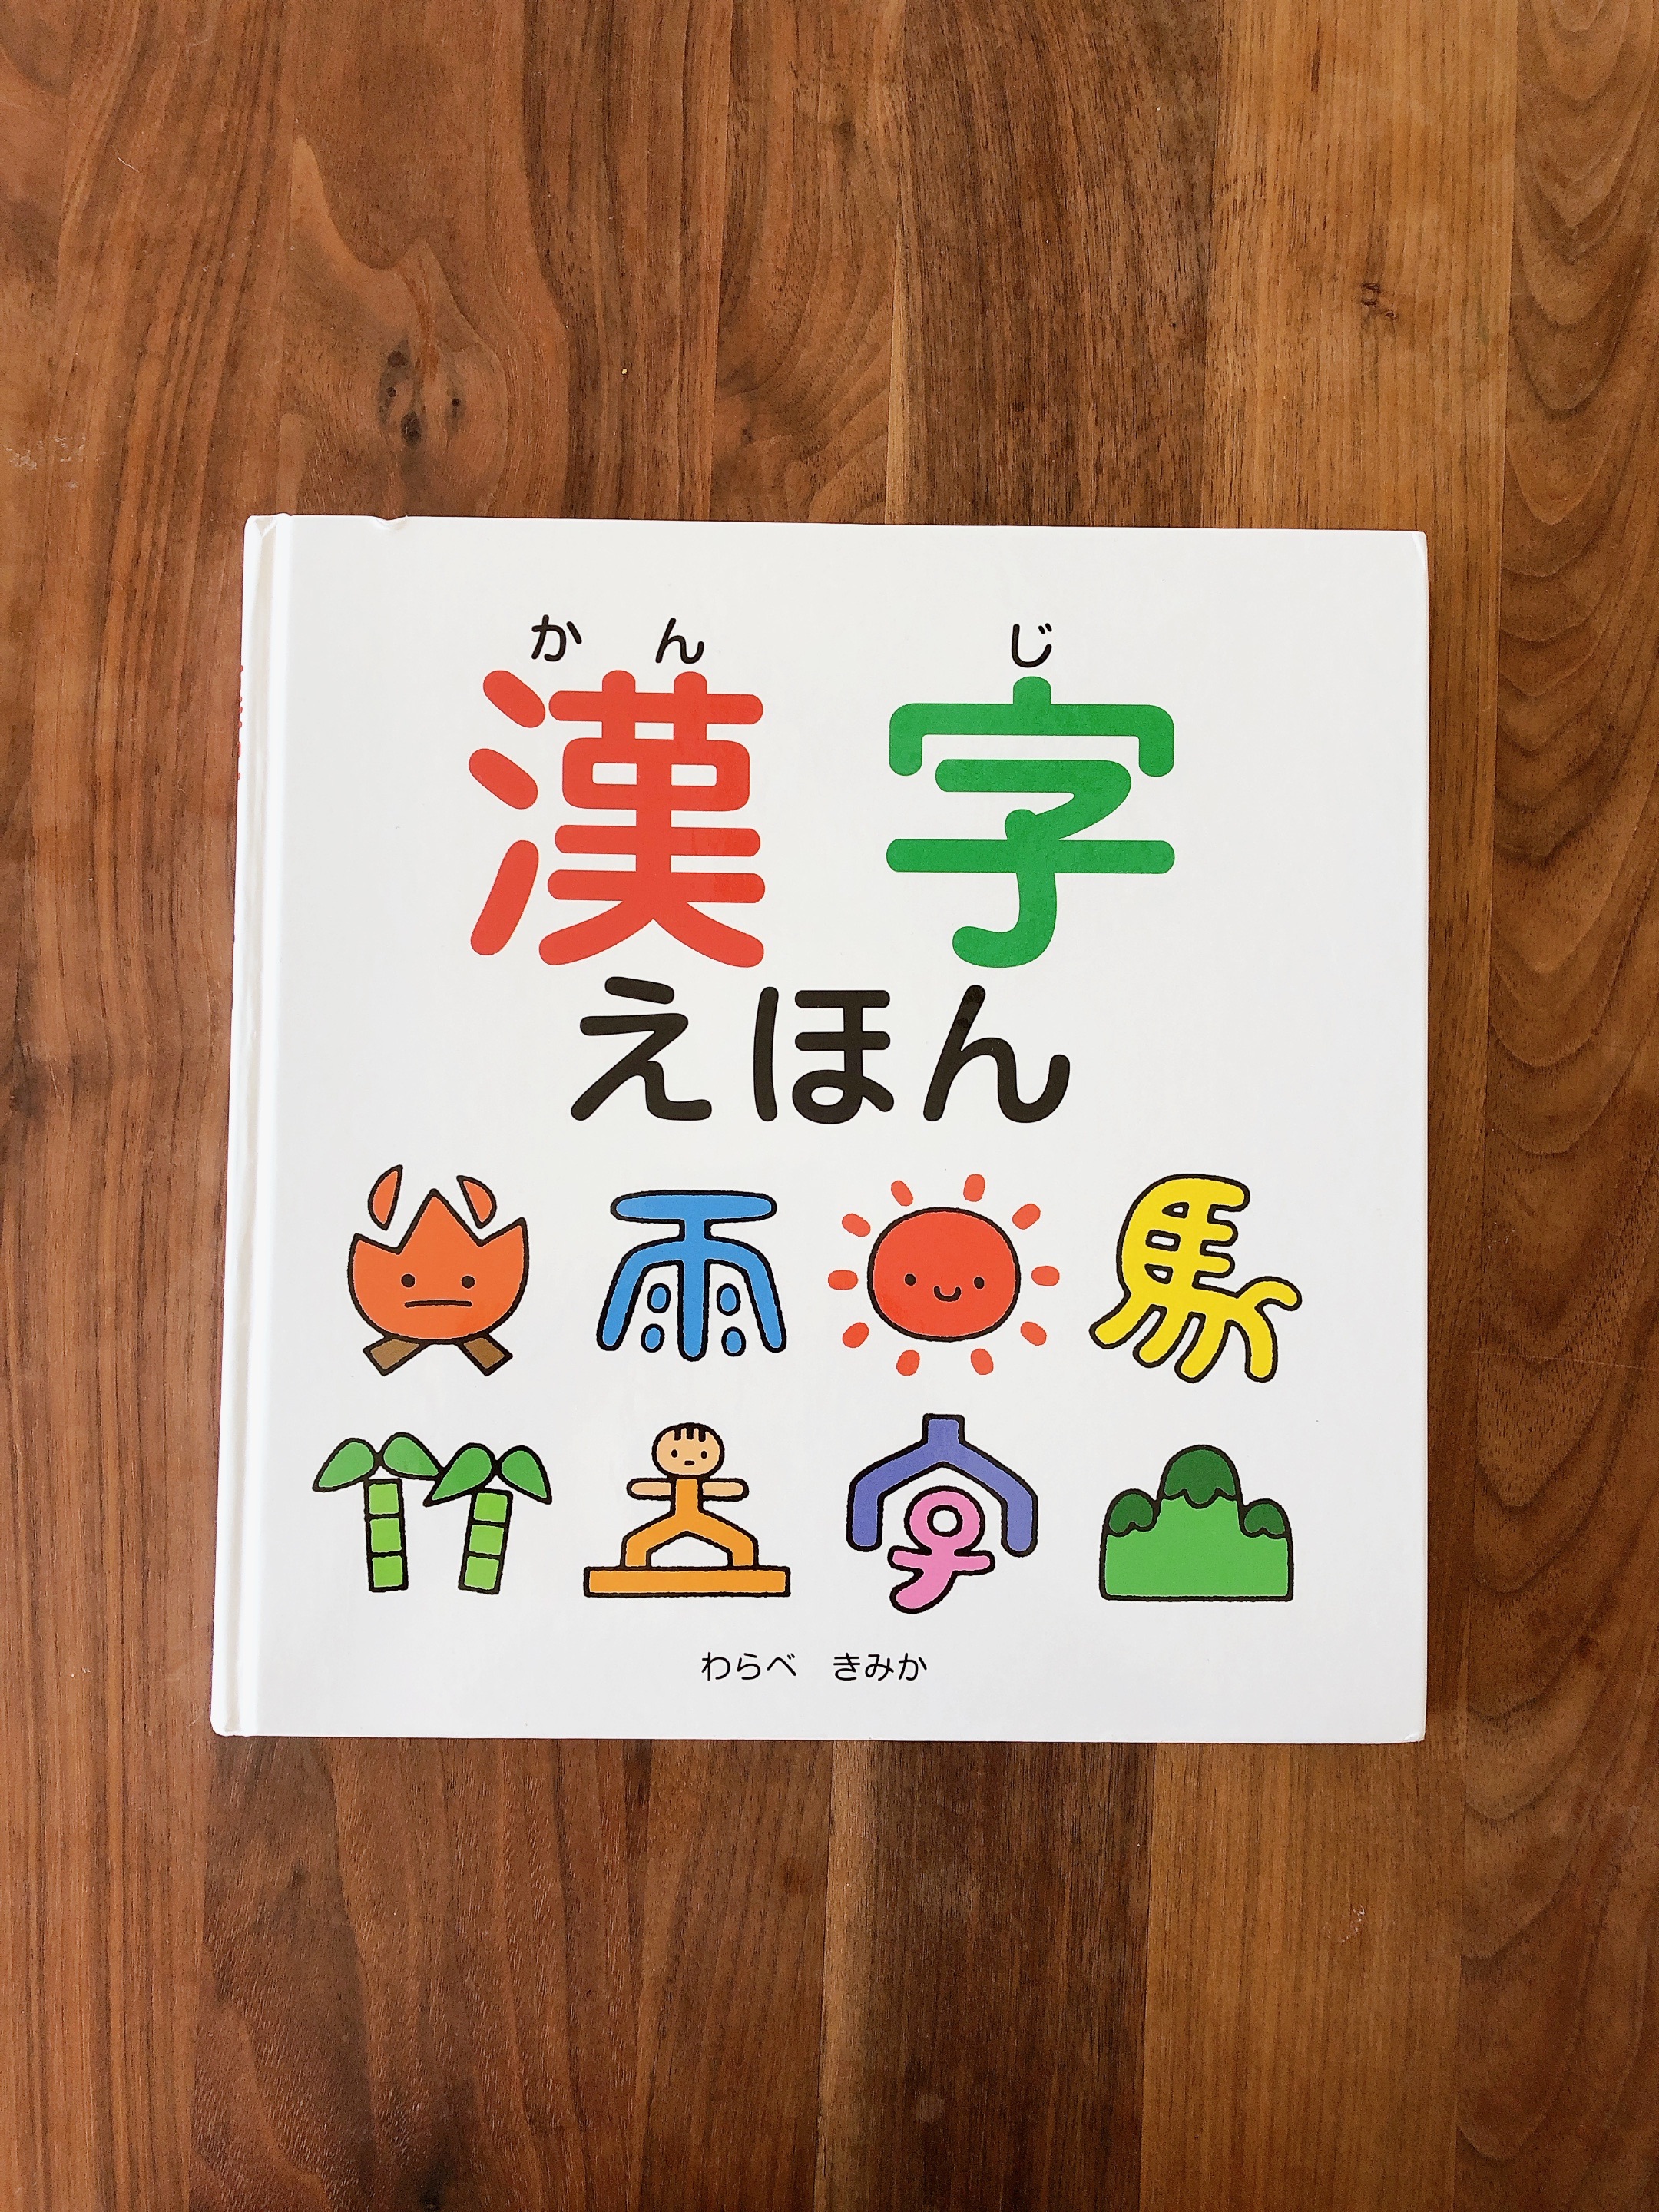 最近、4歳の娘が漢字に興味を持ち始めたので、寝る前のお供に漢字の絵本を読んでます‼︎📕✨

寝る前に読む本、「うちの子はこれがお気に入り‼︎」教えてください☺️の画像